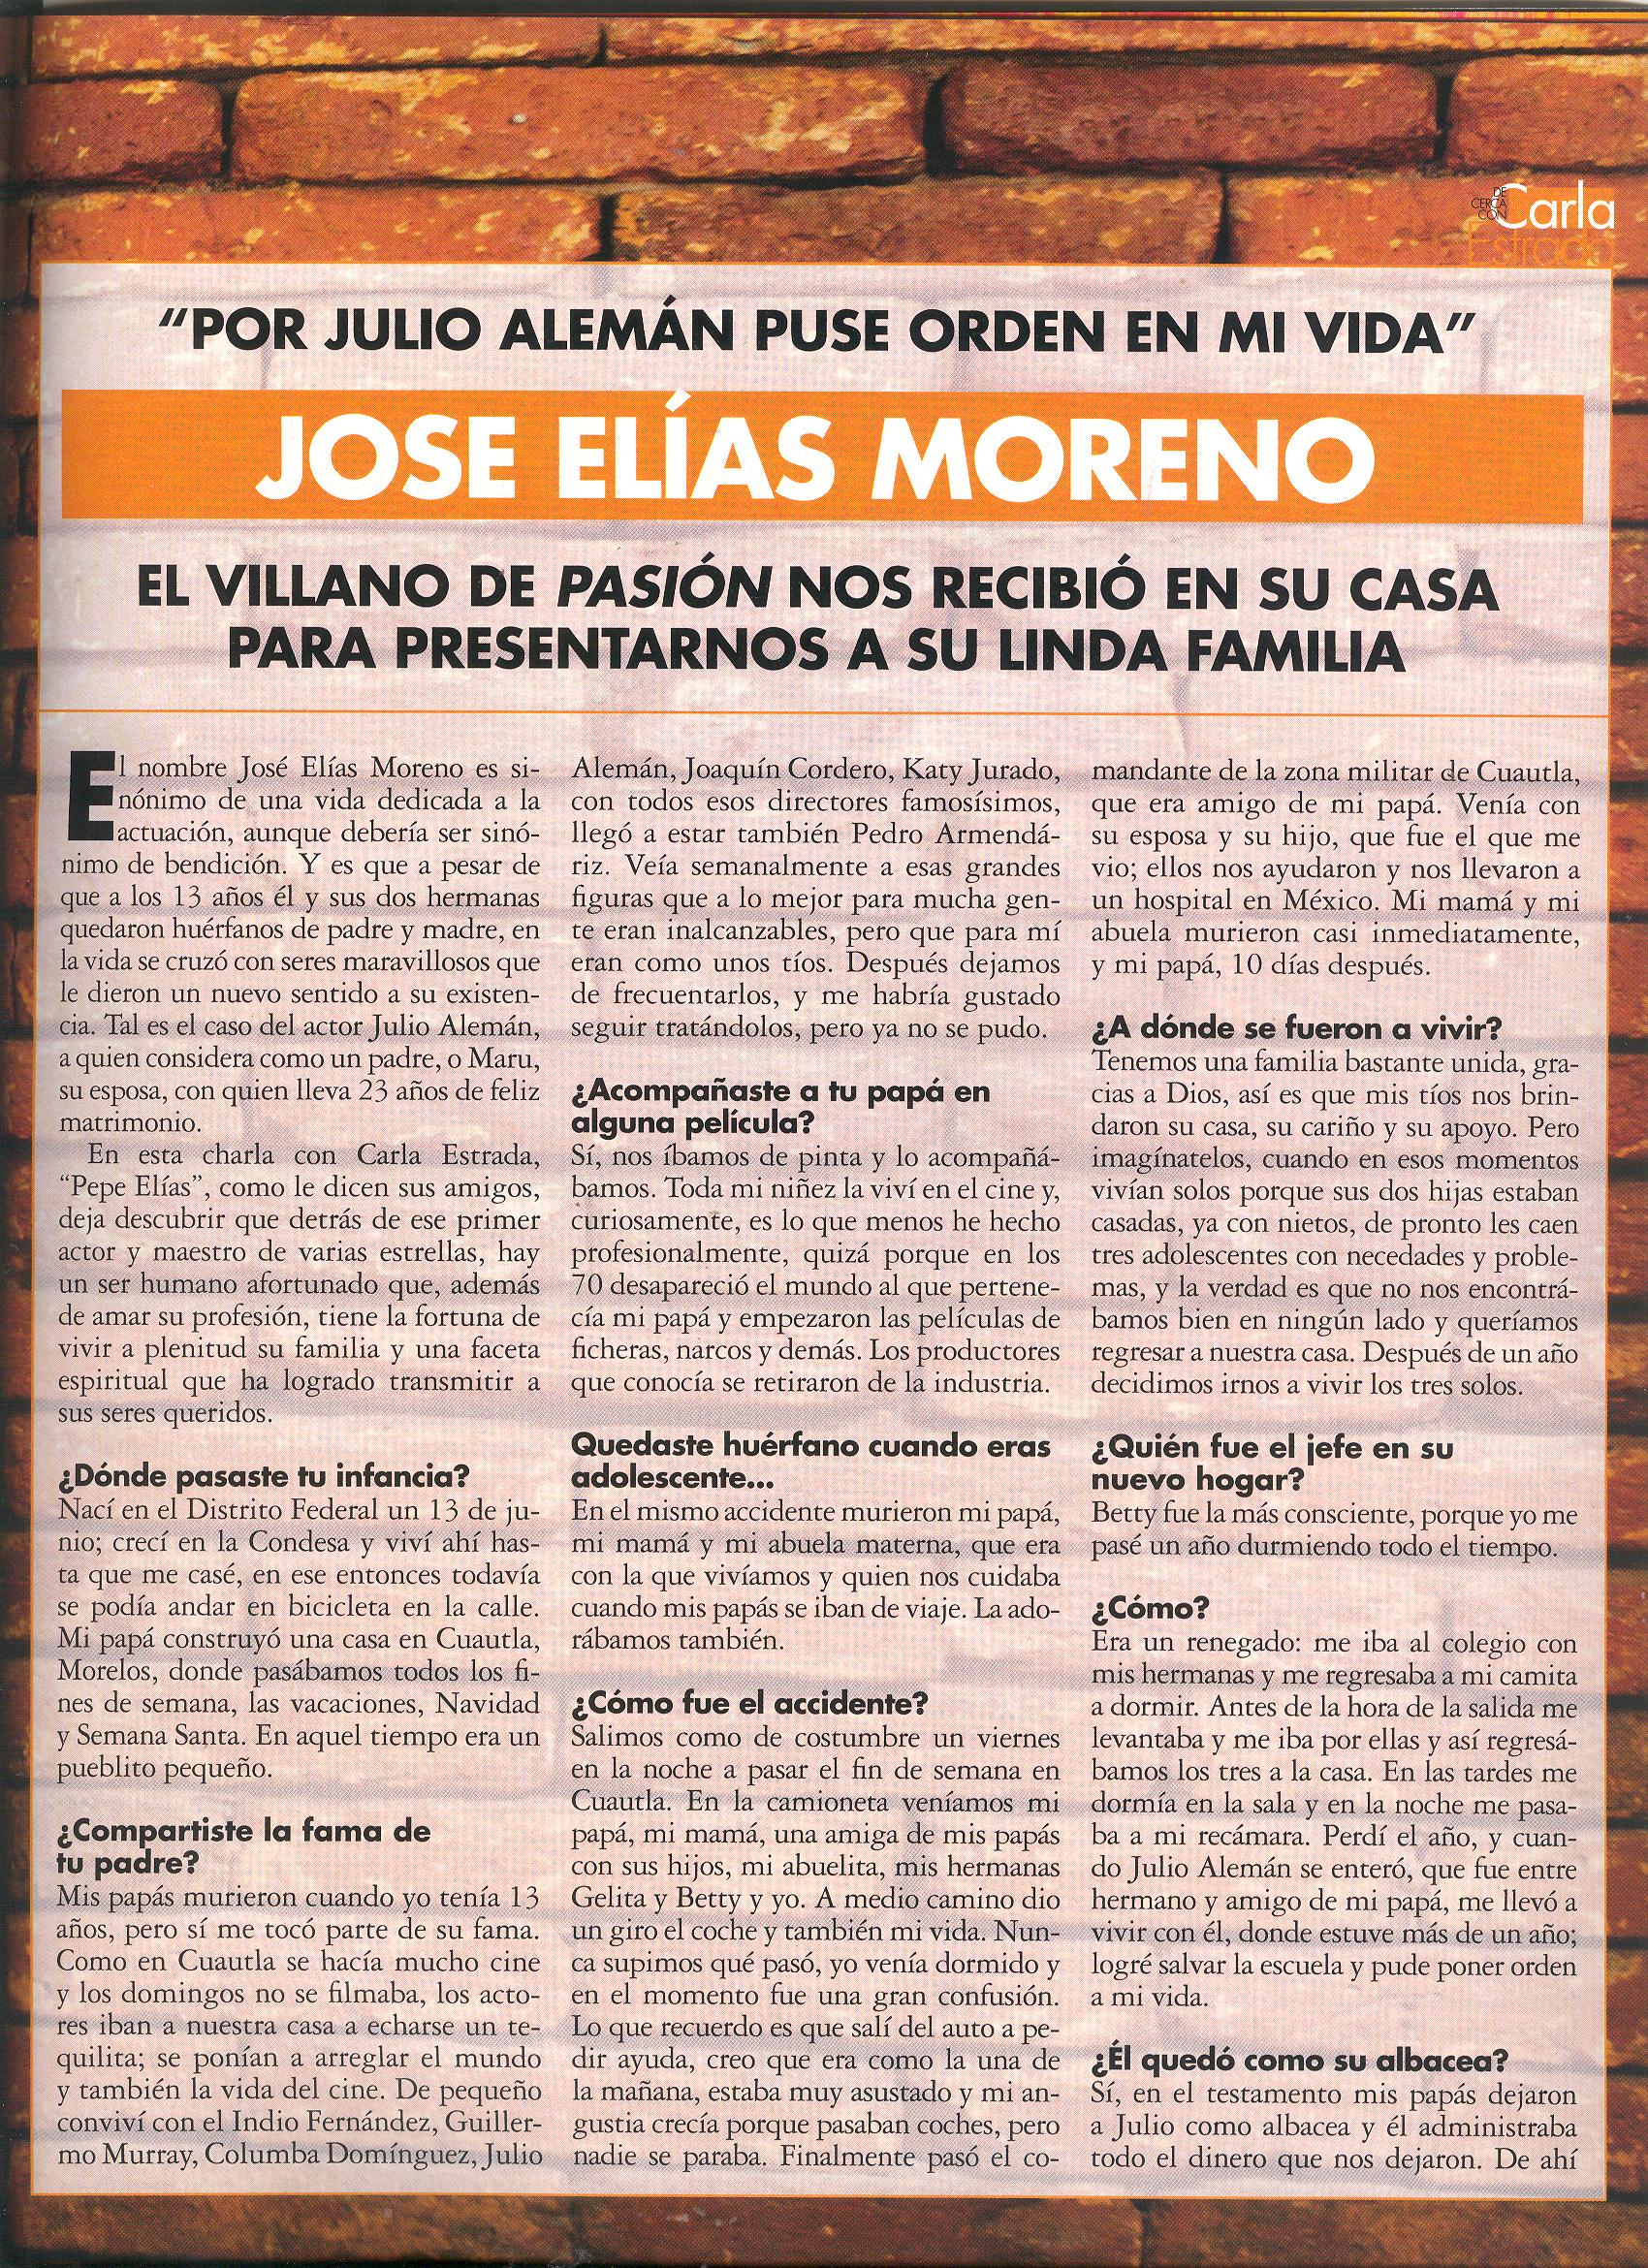  - Jose-Elias-2